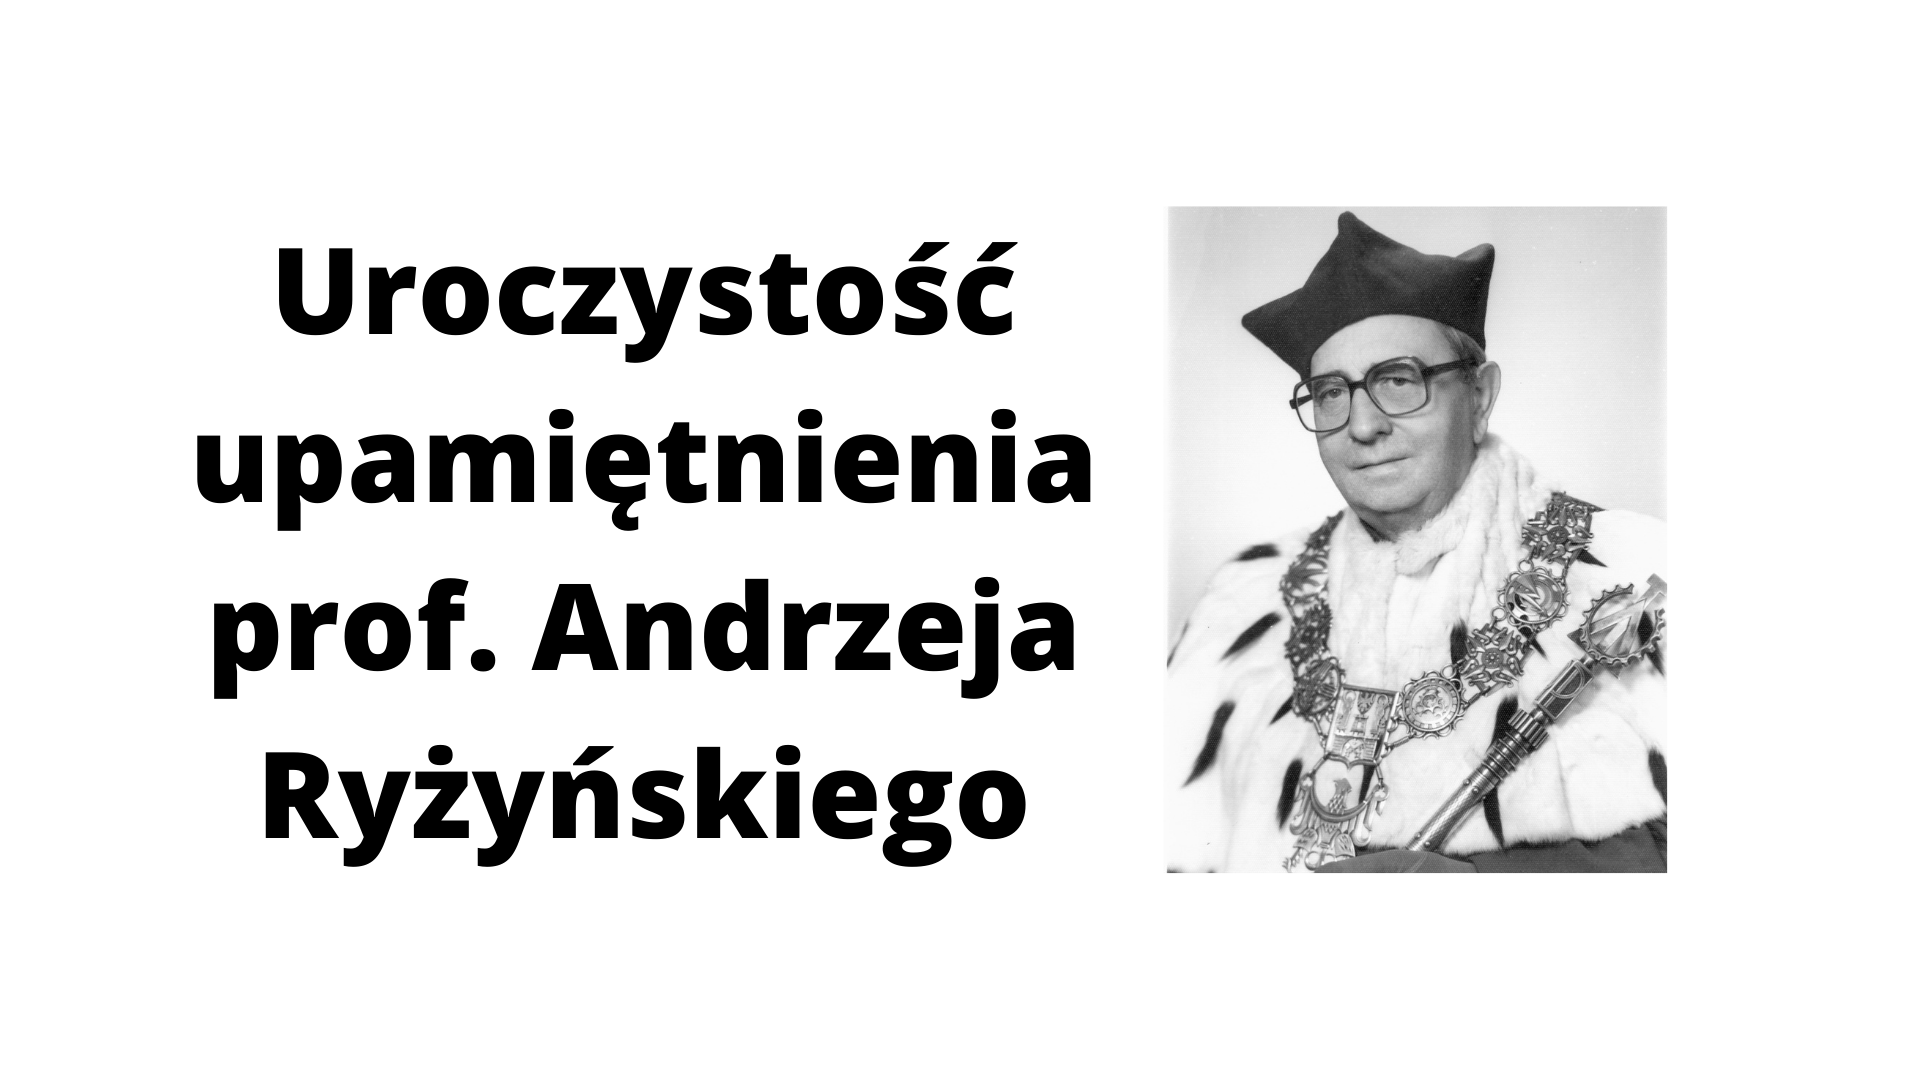 Plakat z zdjęciem prof. Andrzeja Ryżyńskiego